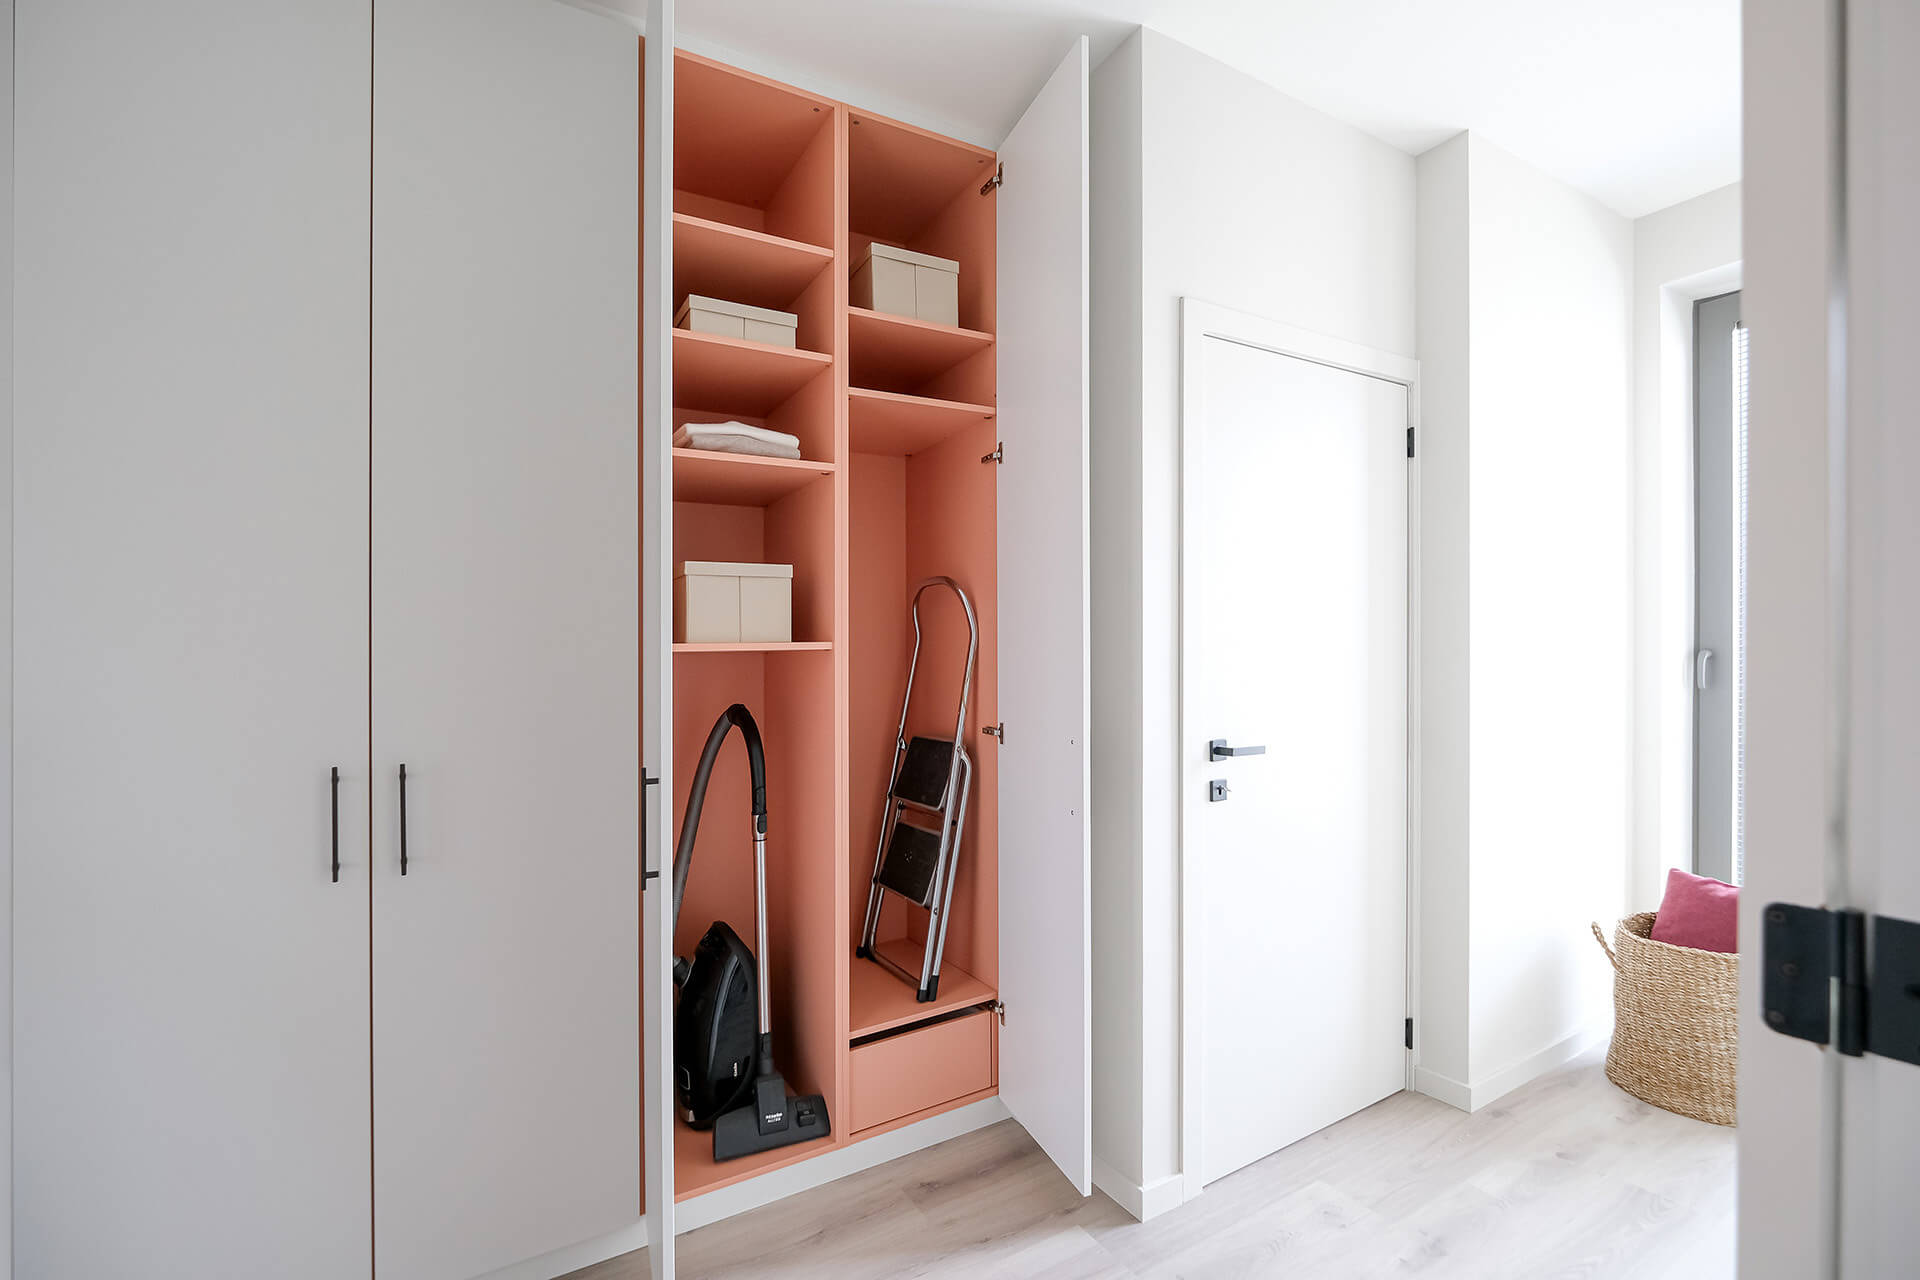 Custom storage cabinet with a pink interior from Maatkasten Online.